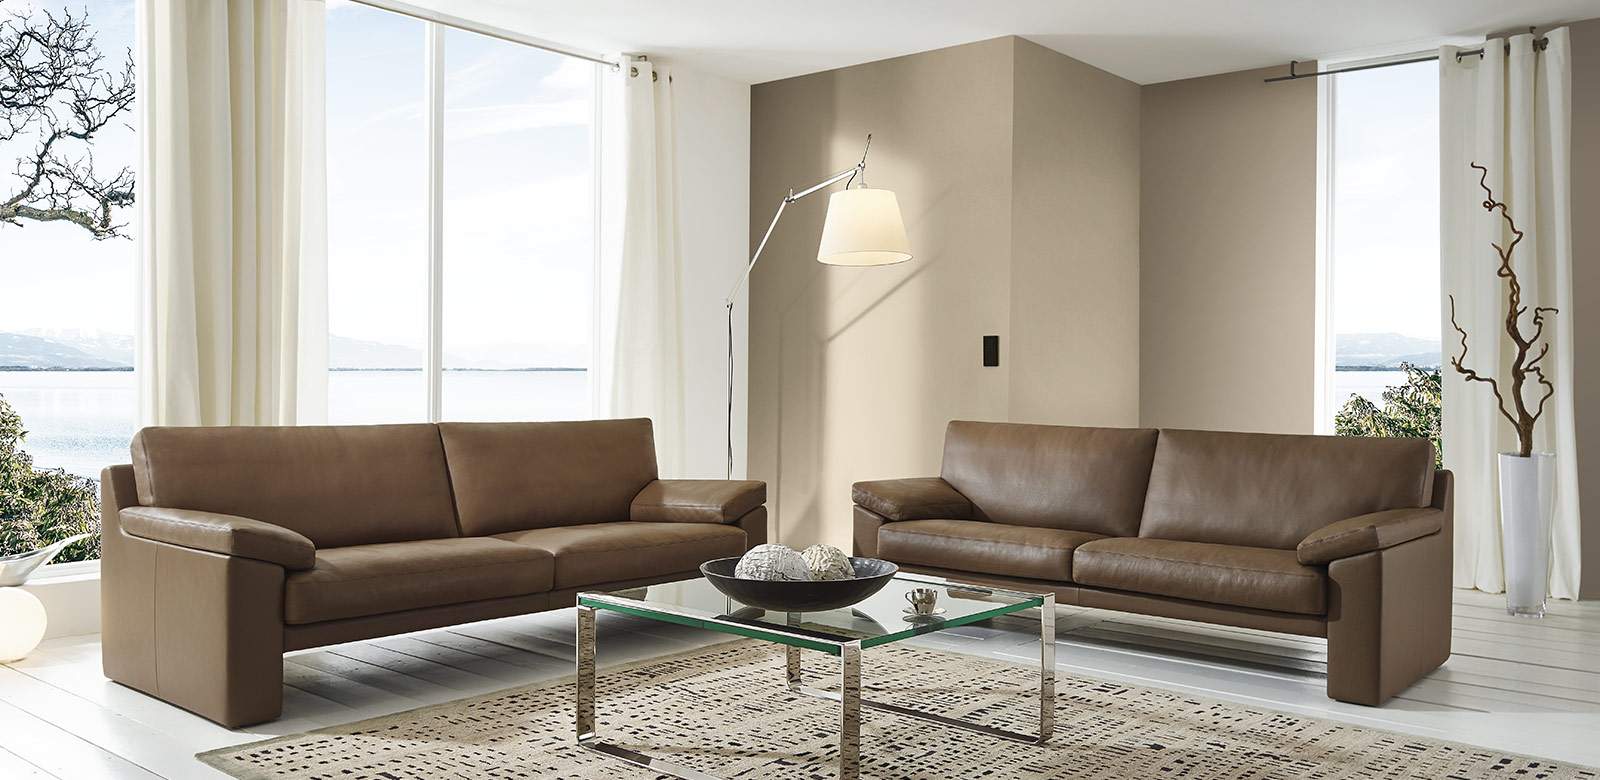 CL600 Sofas aus braunem Leder mit Glastisch in modernem Wohnzimmer am See